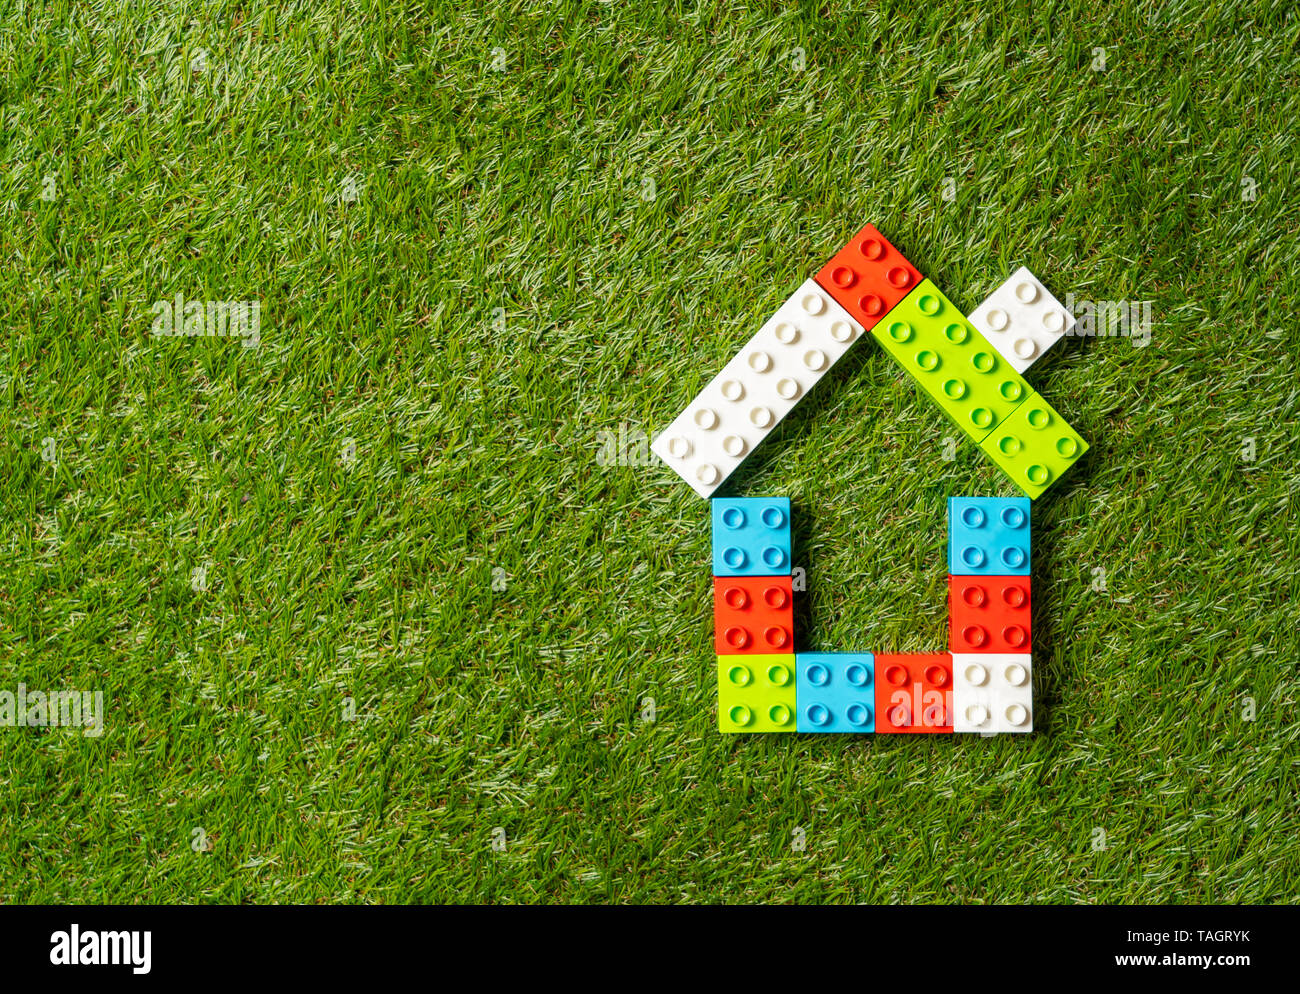 Konzeptionelle Bild der Kinder Spielzeug Bausteine Haus auf der grünen  Wiese top Ansehen und Kopieren in Property Investment Immobilien sparen und  kaufen home Stockfotografie - Alamy